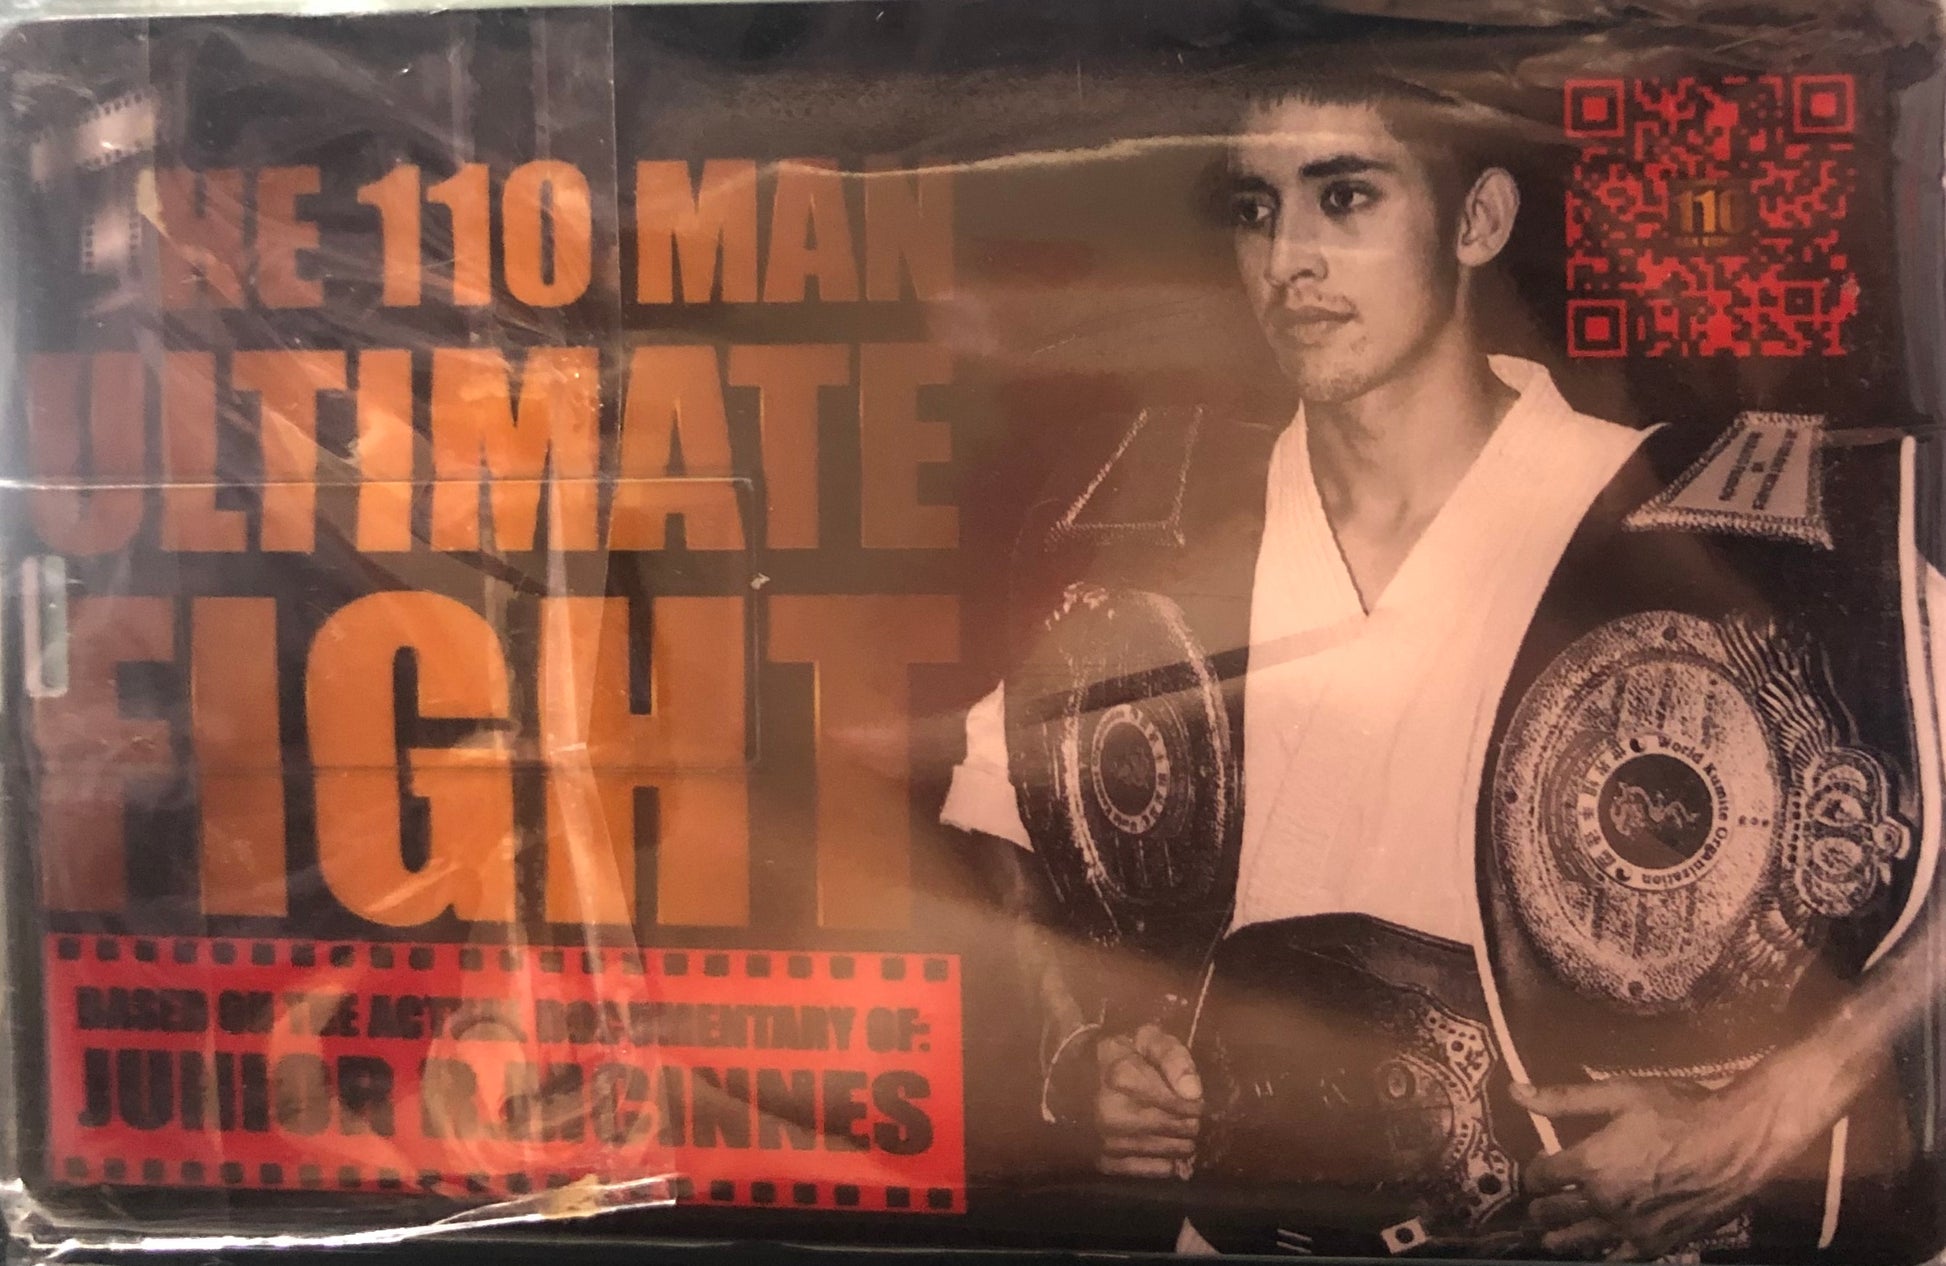 Junior Mcinnes 110 Man Ultimate Fight graphic